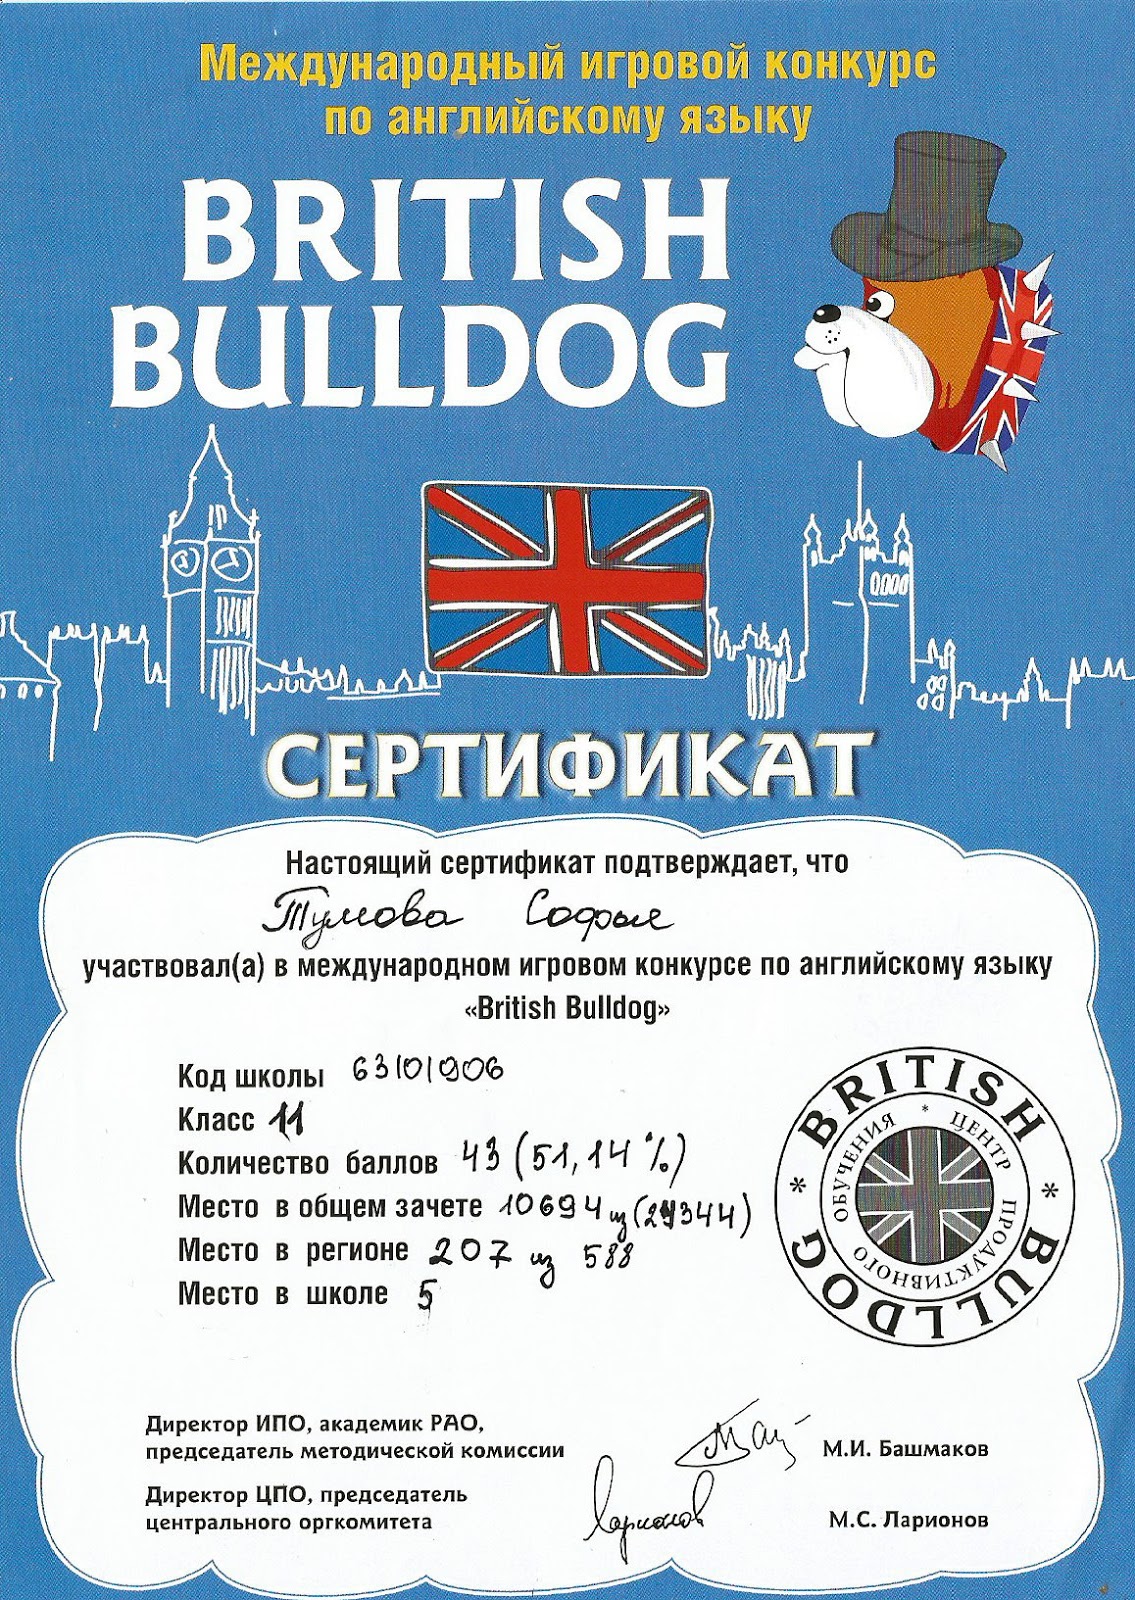 Бульдог конкурс по английскому языку. Британский бульдог сертификат. Британский бульдог конкурс по английскому языку сертификат. Международный игровой конкурс по английскому языку British Bulldog.